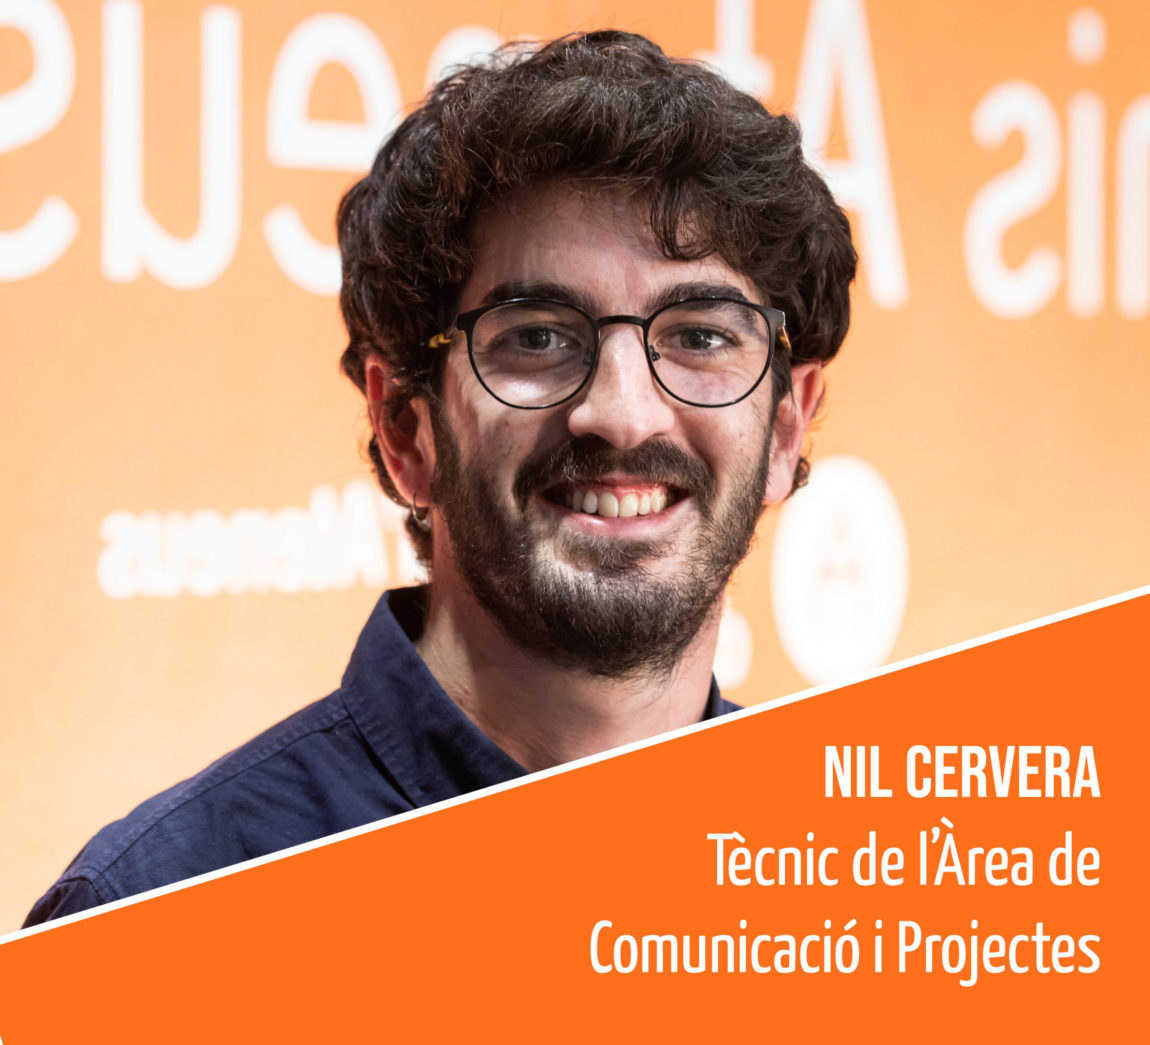 Coneix l’equip humà de la FAC: Nil Cervera, tècnic de l’Àrea de Comunicació i Projectes